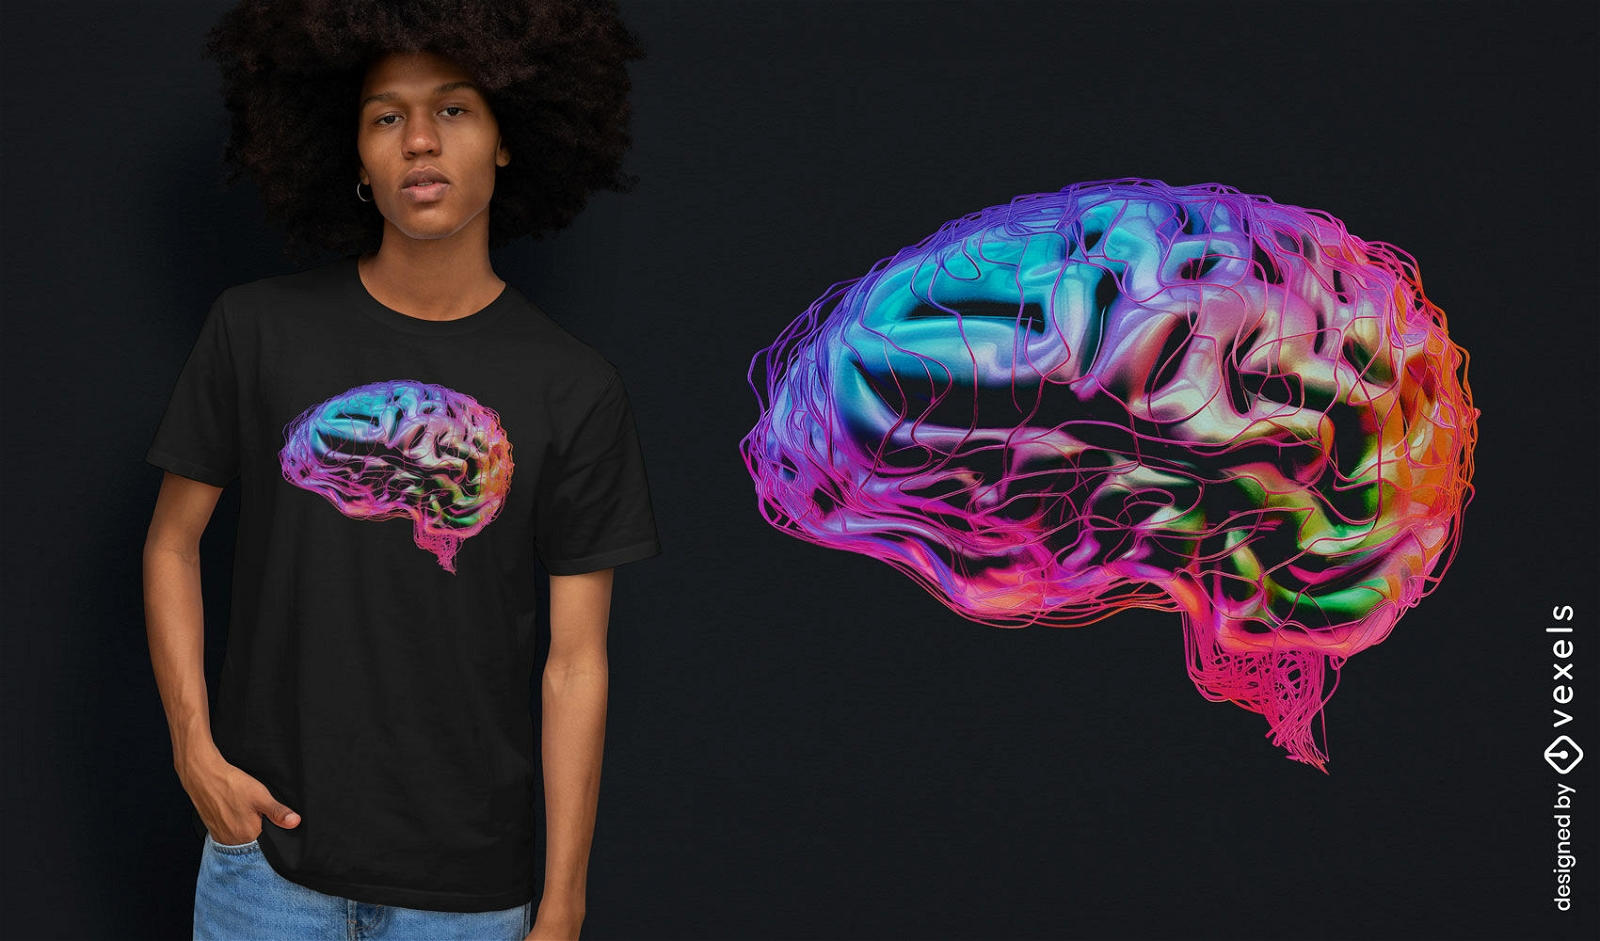 Buntes T-Shirt-Design mit Gehirnkunst